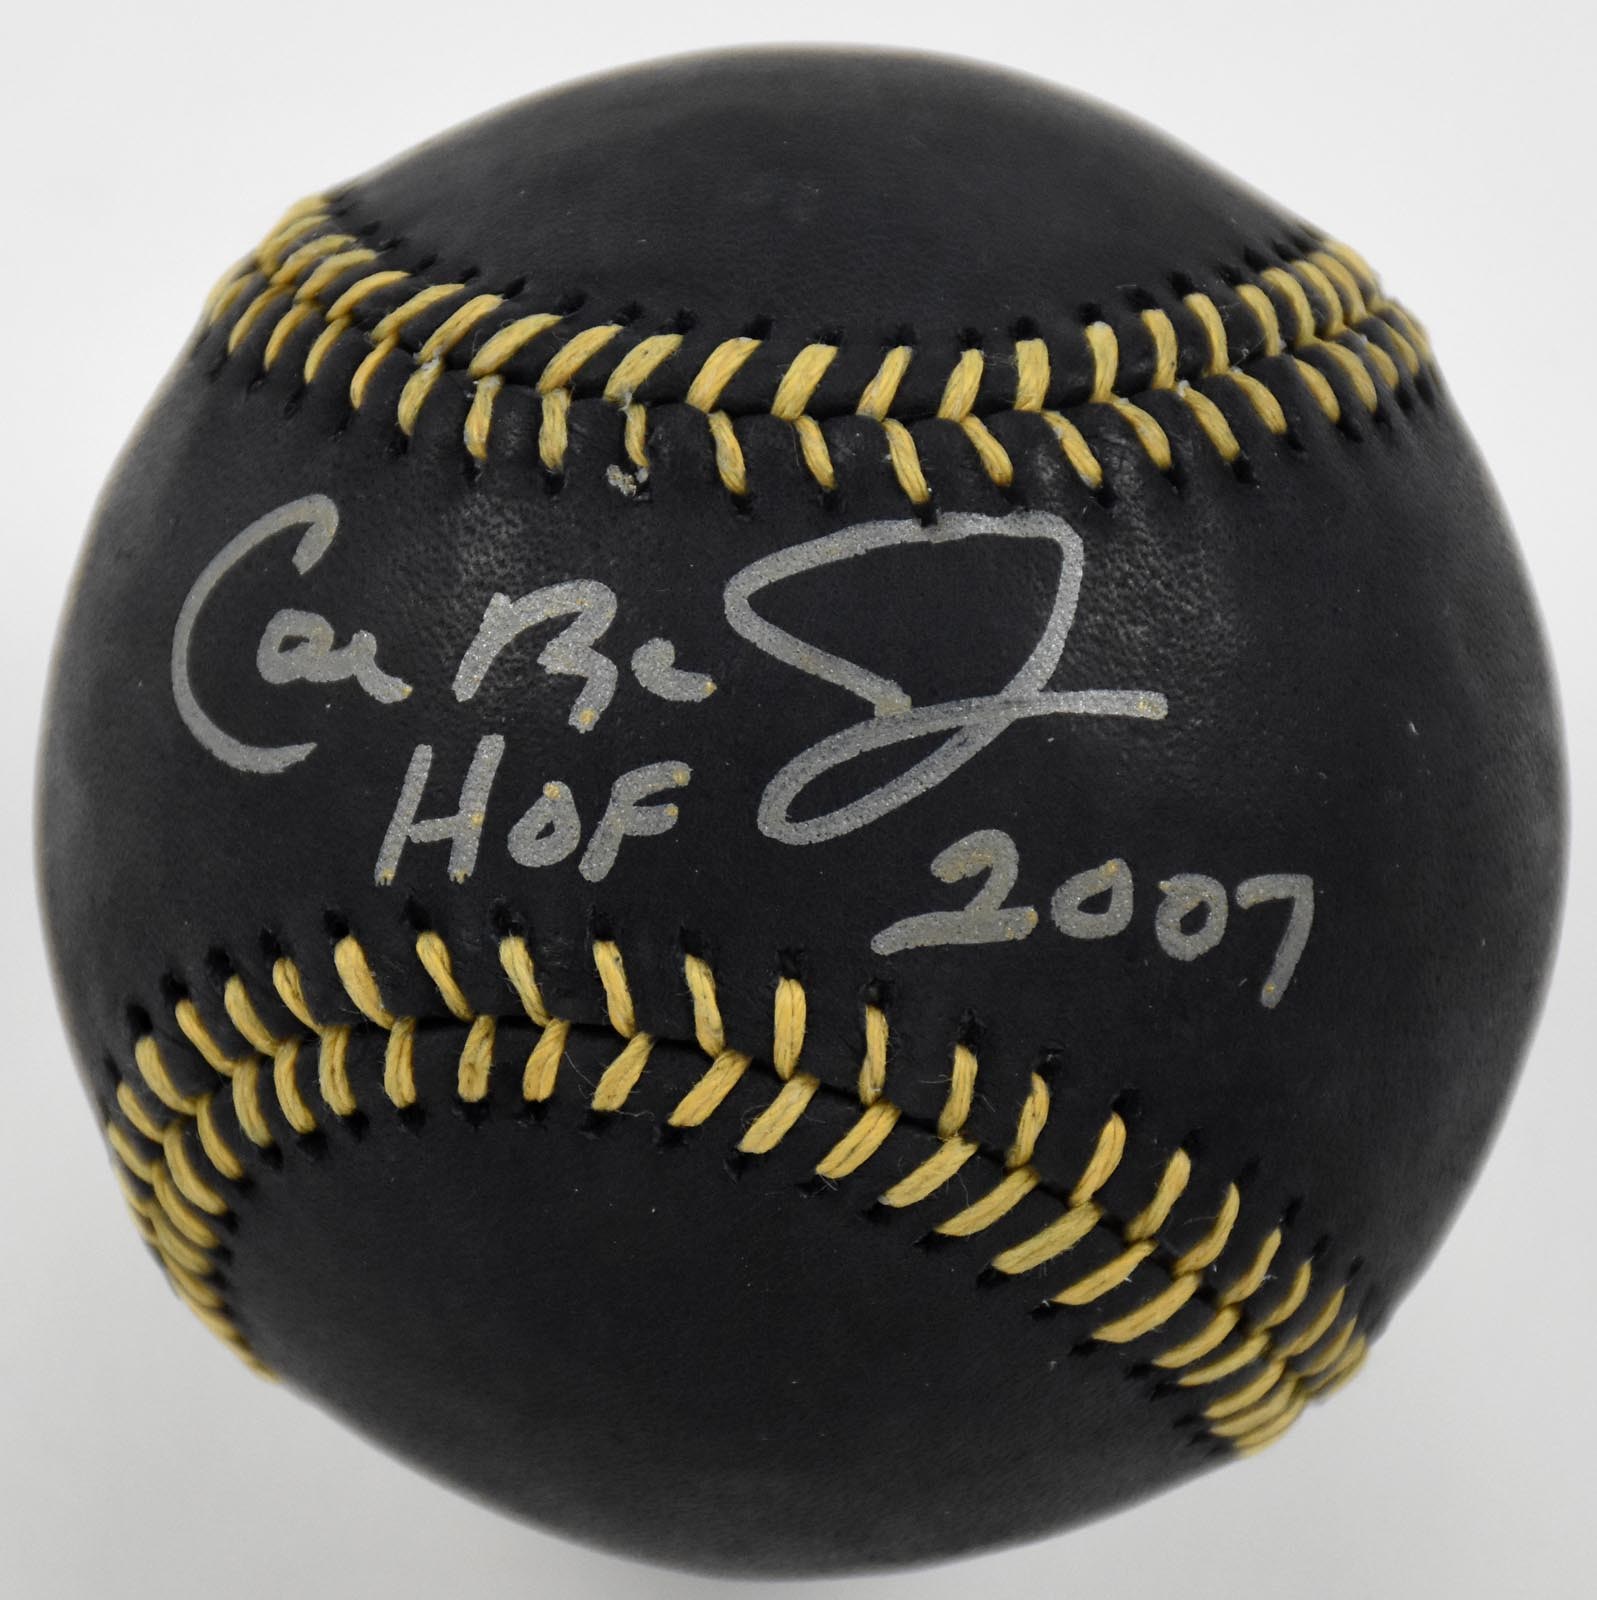 - Cal Ripken Jr "HOF 2007" Single Signed Black Leather Baseball (JSA)